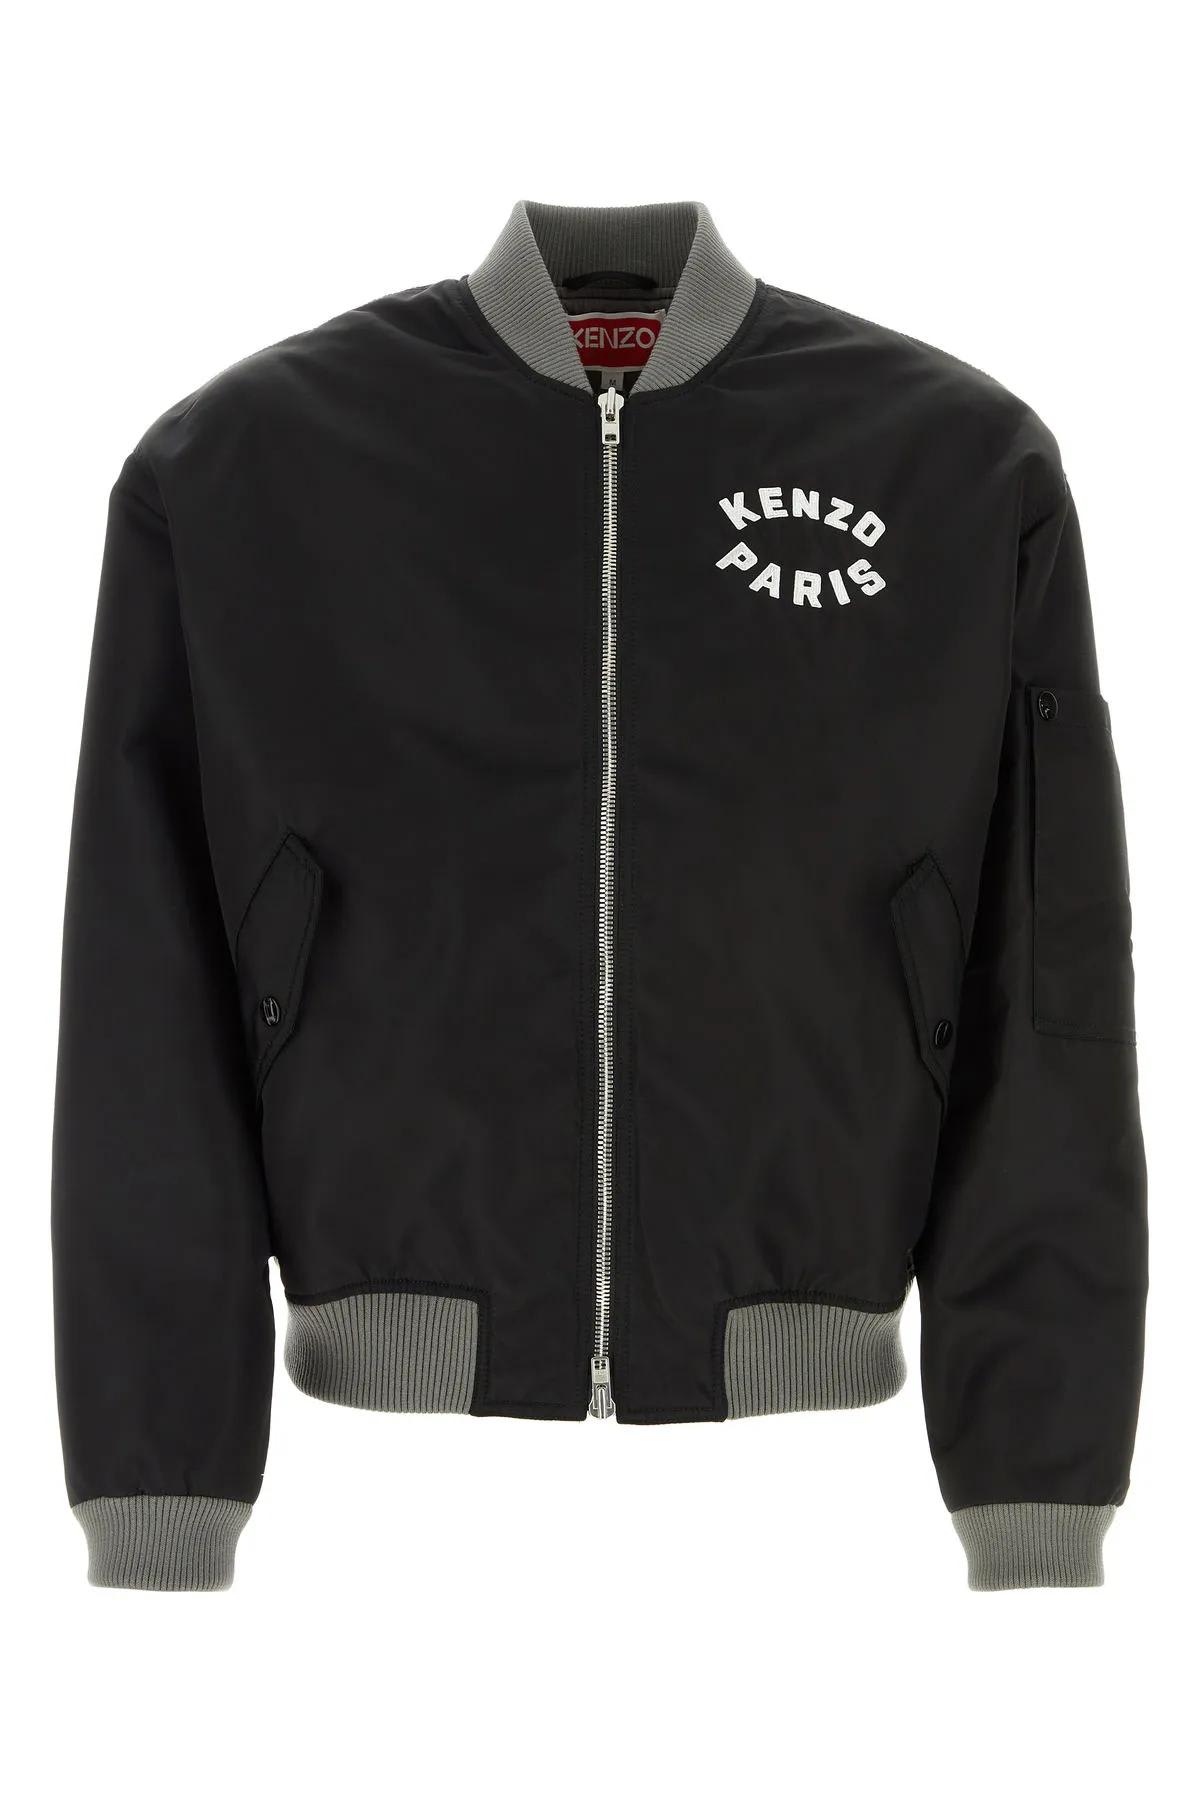 Shop Kenzo Black Nylon Bomber Jacket